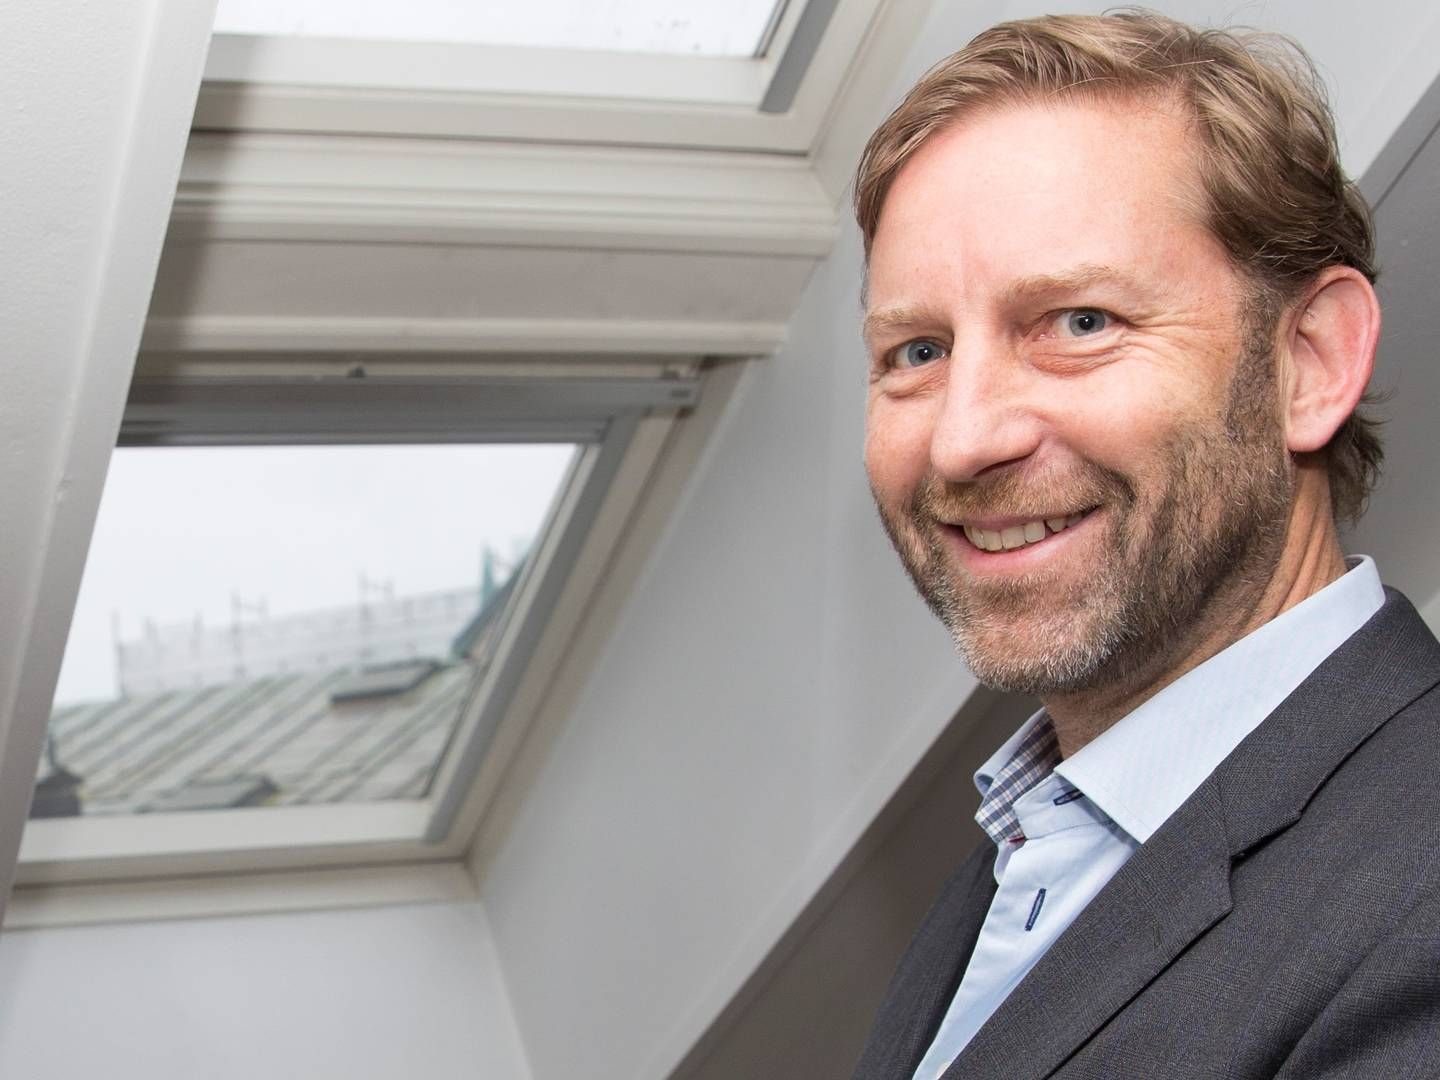 RIGGET FOR VEKST: Administrerende direktør Mathis Grimstad i Stor-Oslo Eiendom vraket syndikeringsmodellen for å skape vekst som industriell eiendomsutvikler. | Foto: Terje Bendiksby/NTB